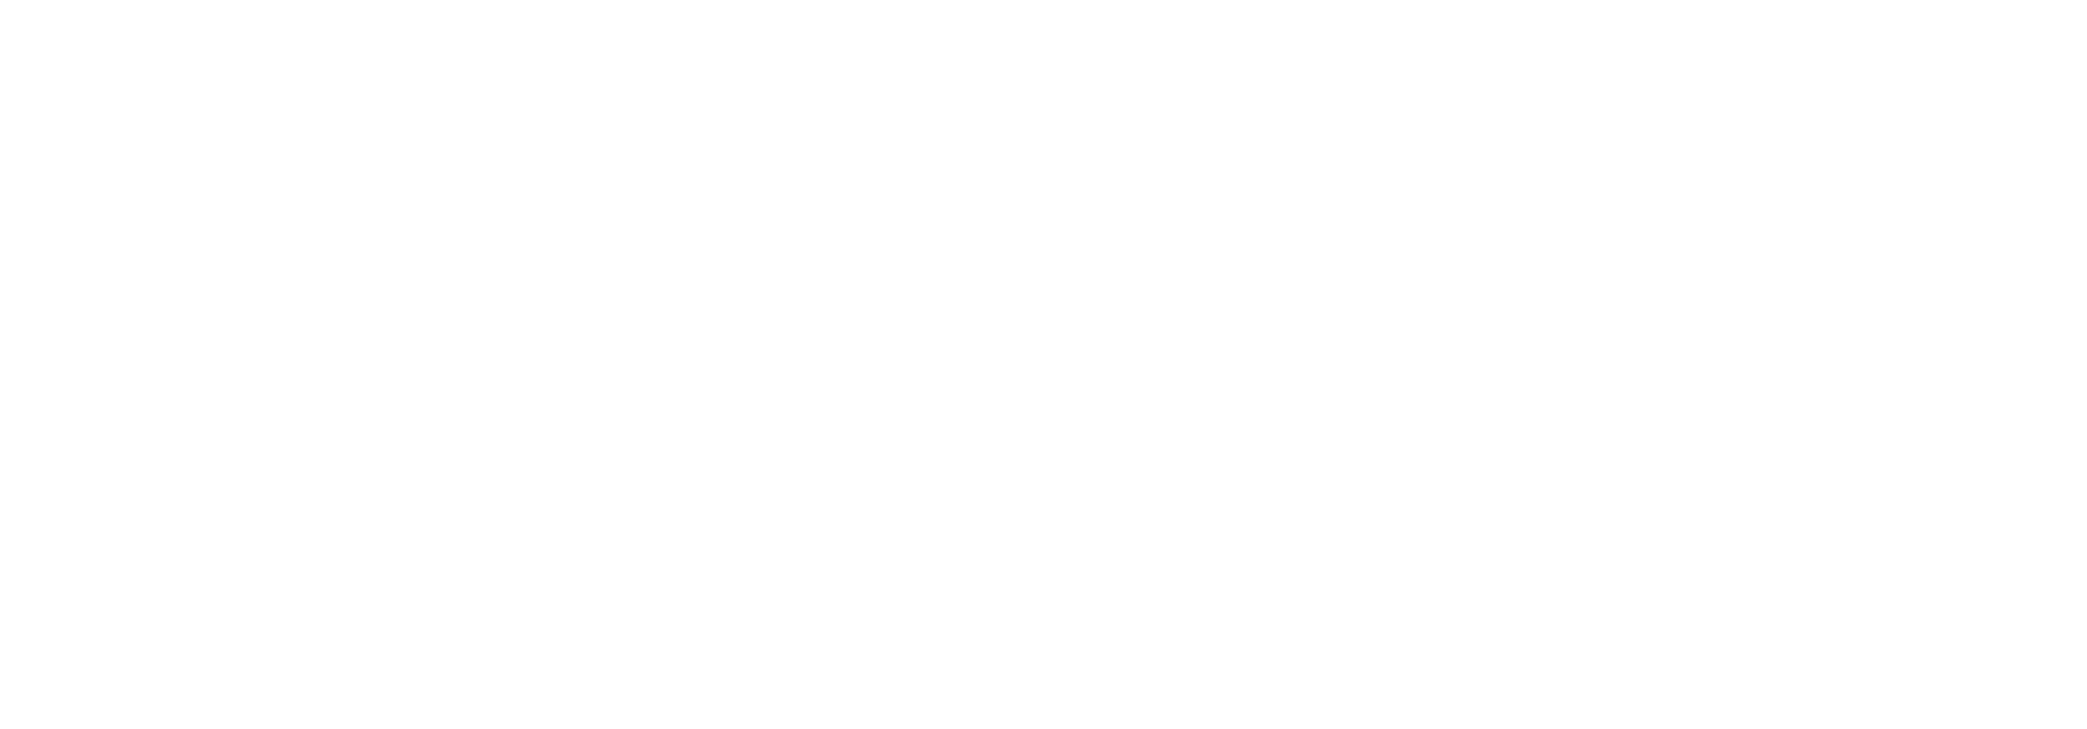 https://muzieklesneushoorn.nl/wp-content/uploads/2018/09/Logo-muziekles-neushoorn-LETTERS-wit.png